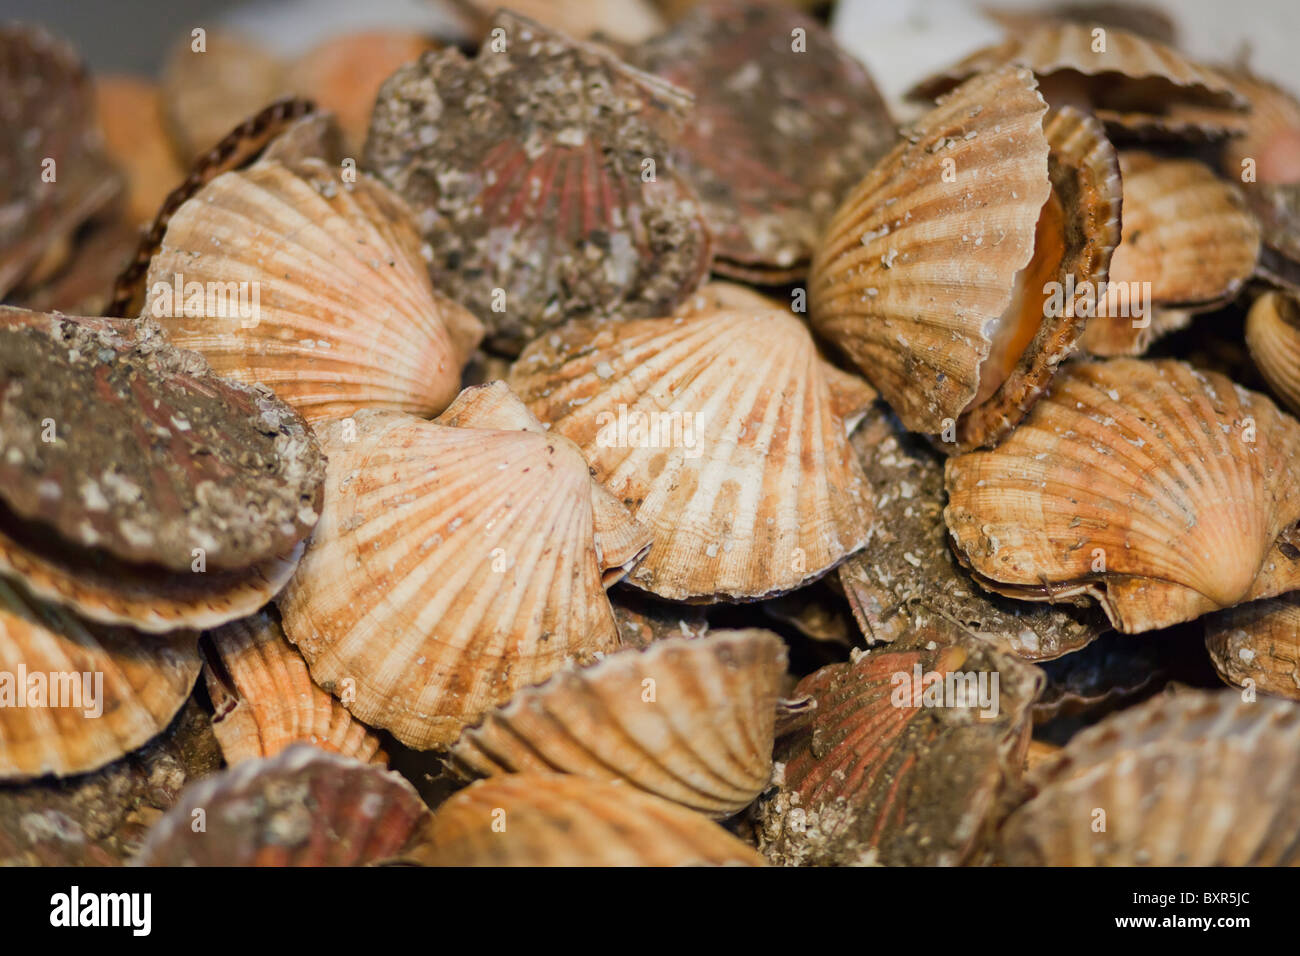 Jakobsmuscheln auf dem Display in einer Meeresfrüchte-Markt-Close-up Stockfoto